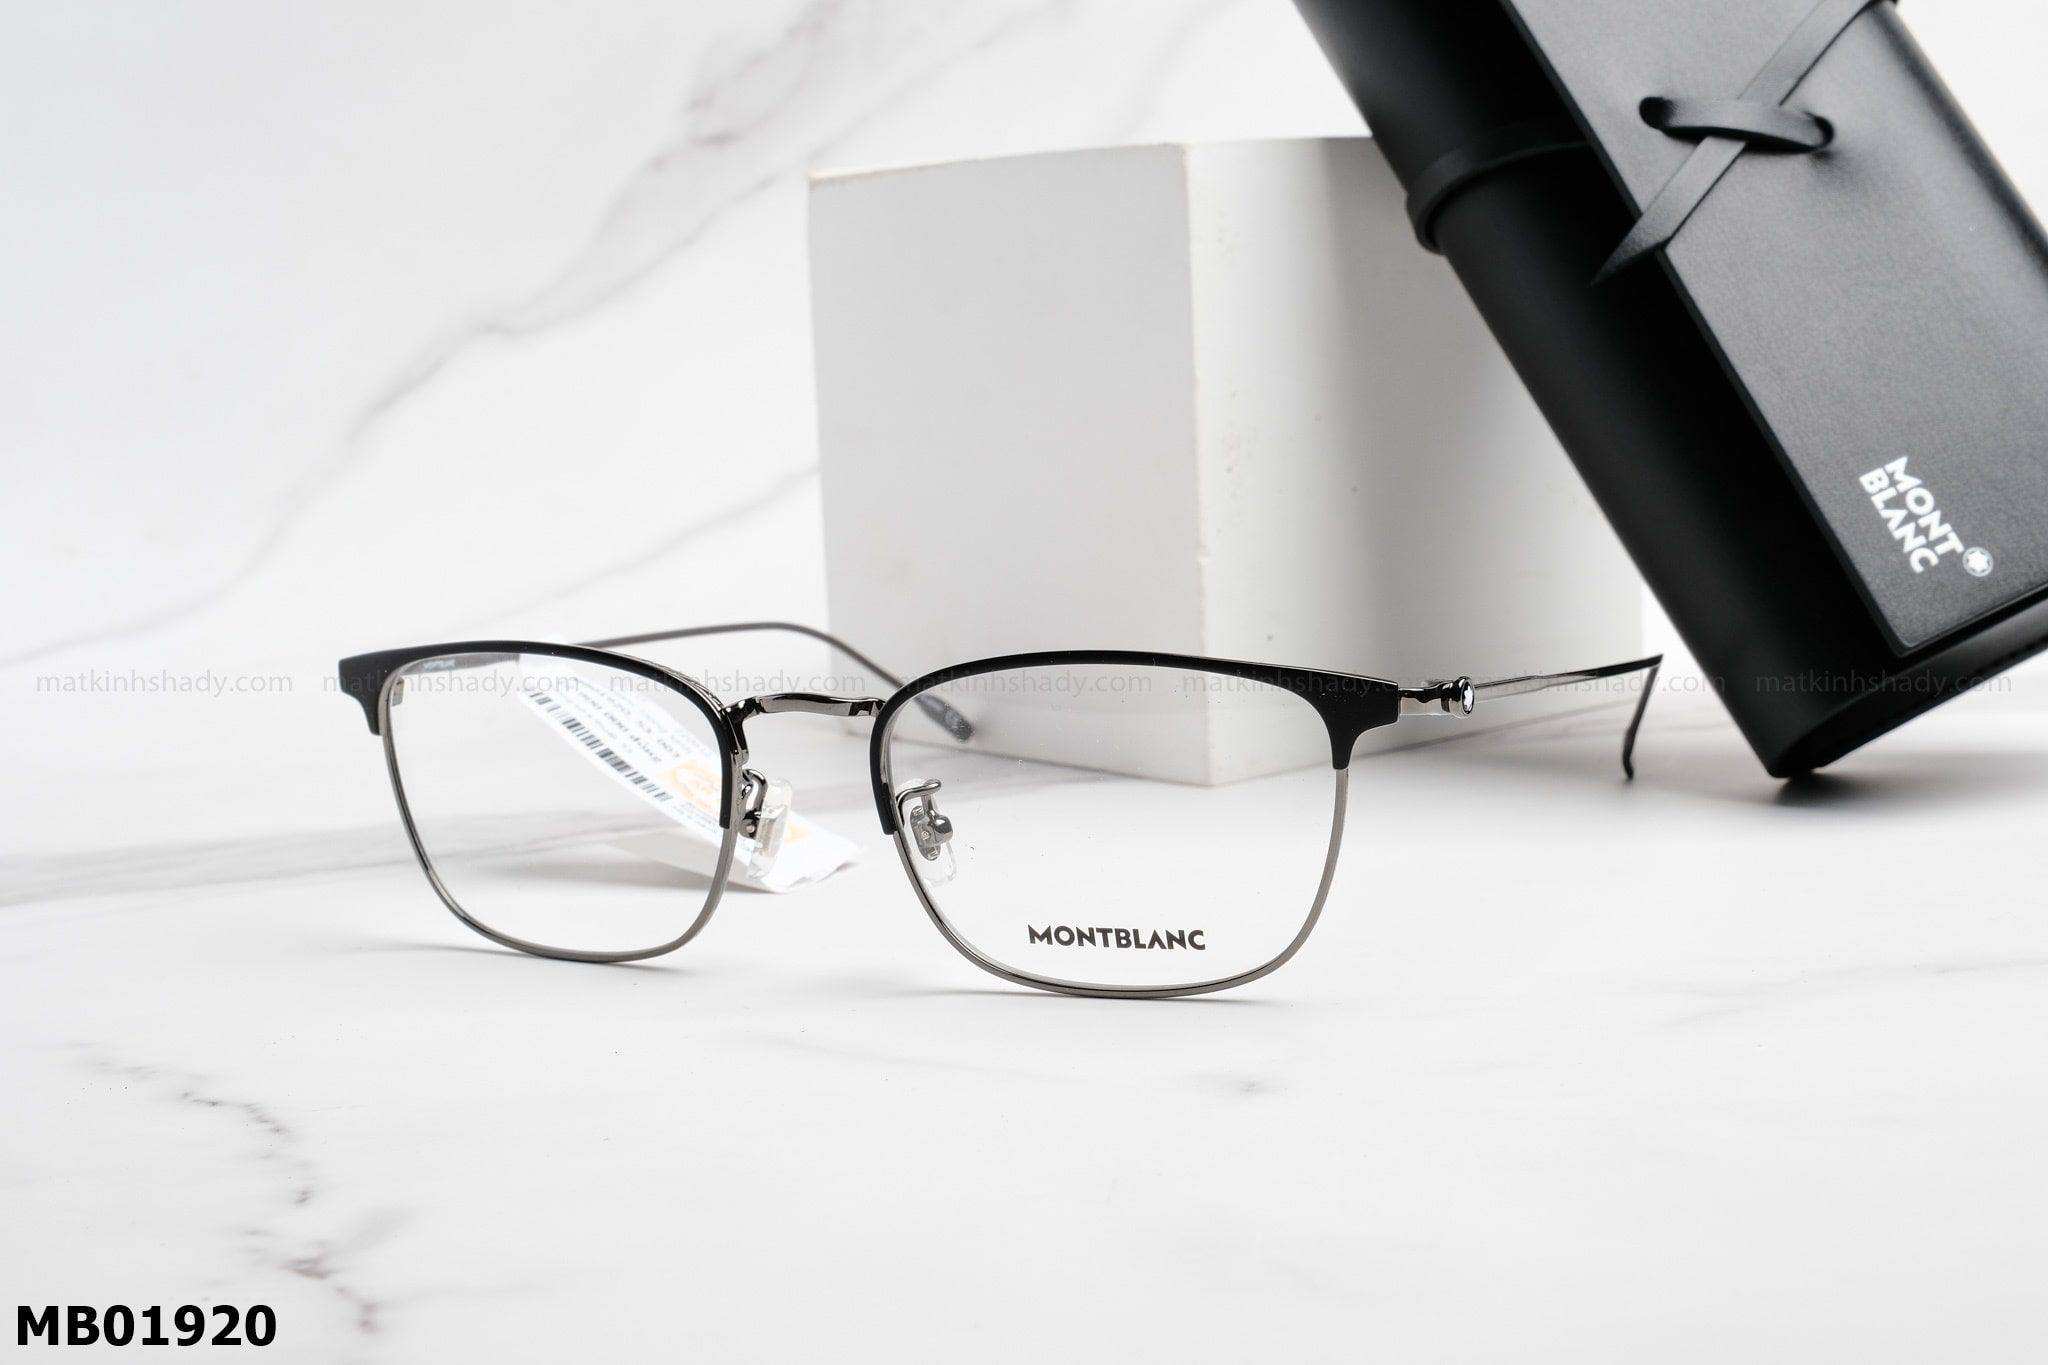  Montblanc Eyewear - Glasses - MB01920 